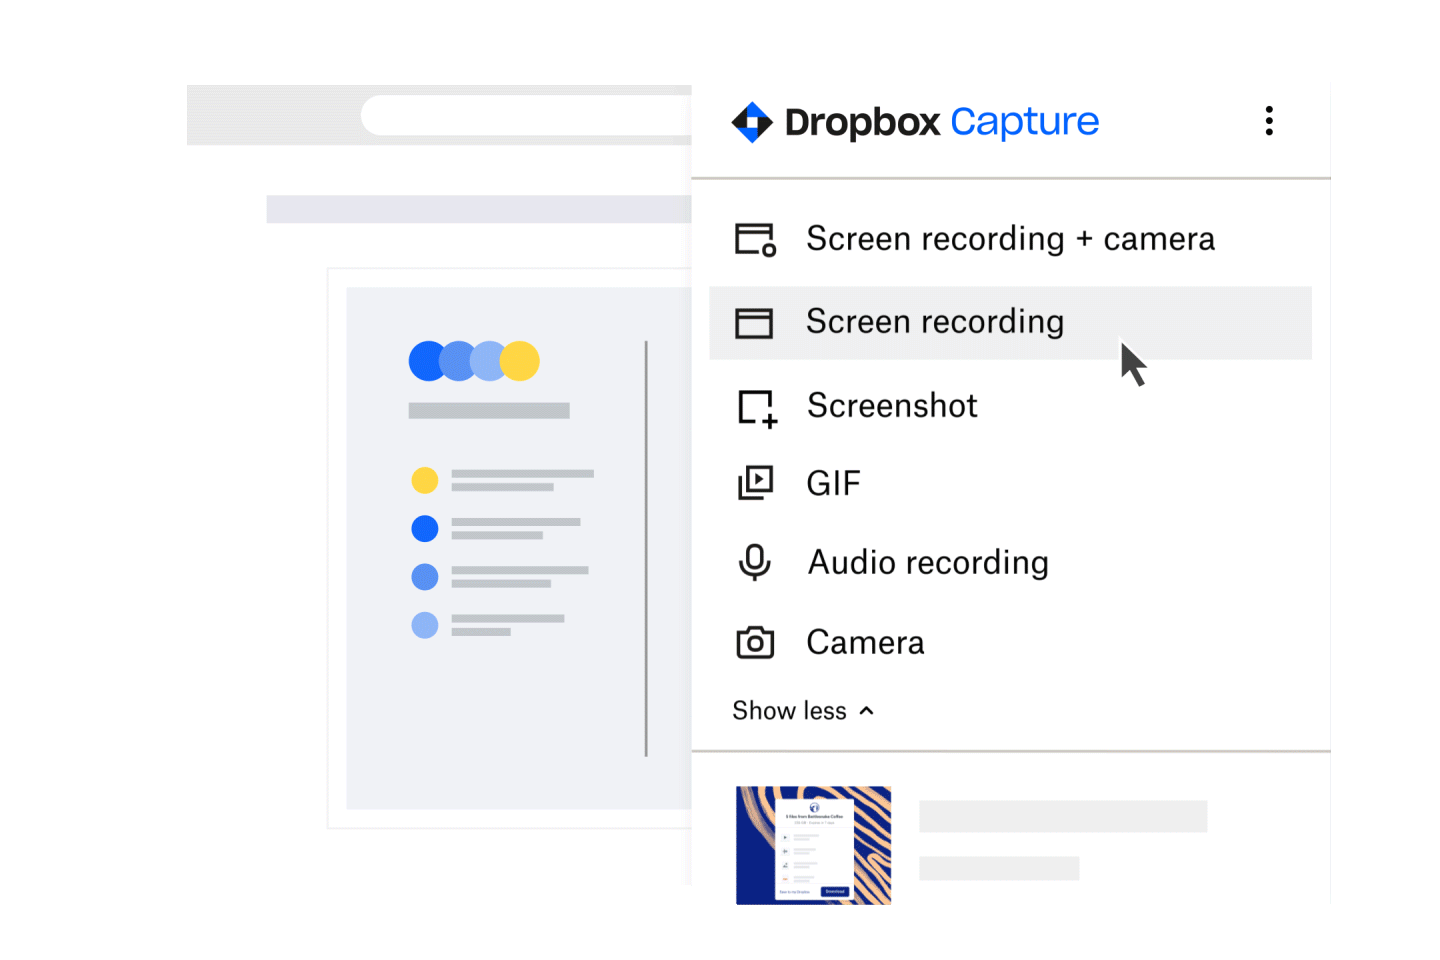 I Dropbox Capture-produkten klickar en kvinna på skärminspelnings- och kameraknappen, väljer en del av skärmen, klickar på inspelningsknappen och börjar inspelningen. 